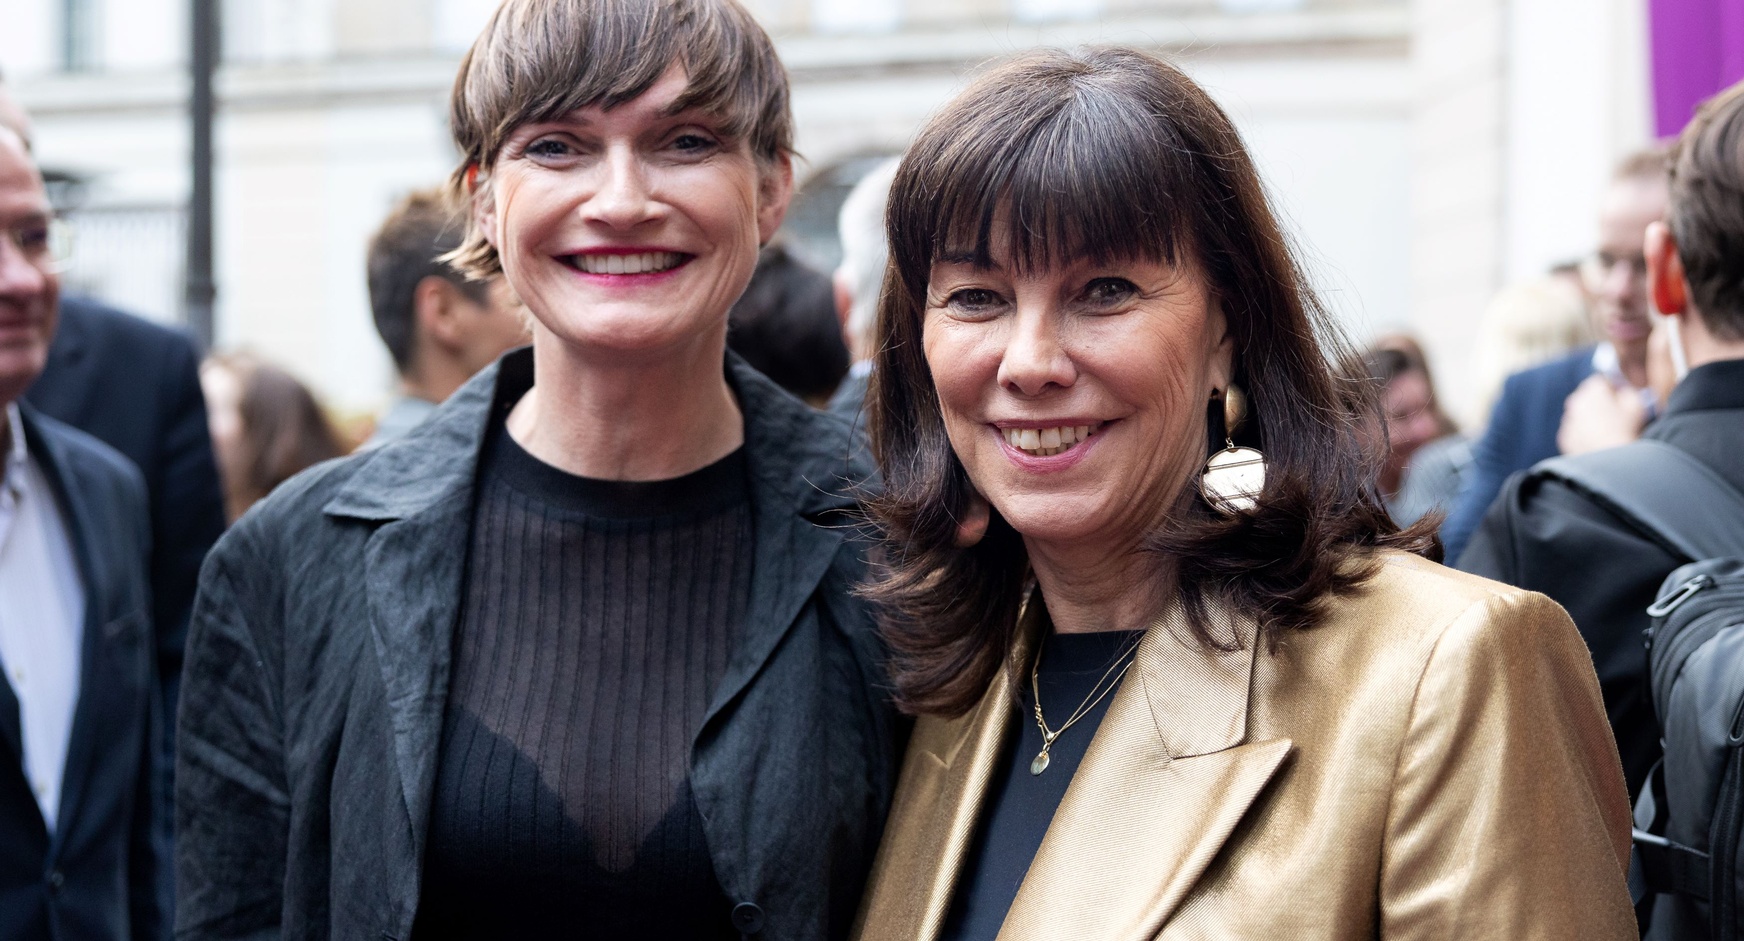 Astrid Steharnig-Staudinger, CEO Österreich Werbung, und WKO-Vizepräsidentin Martha Schultz